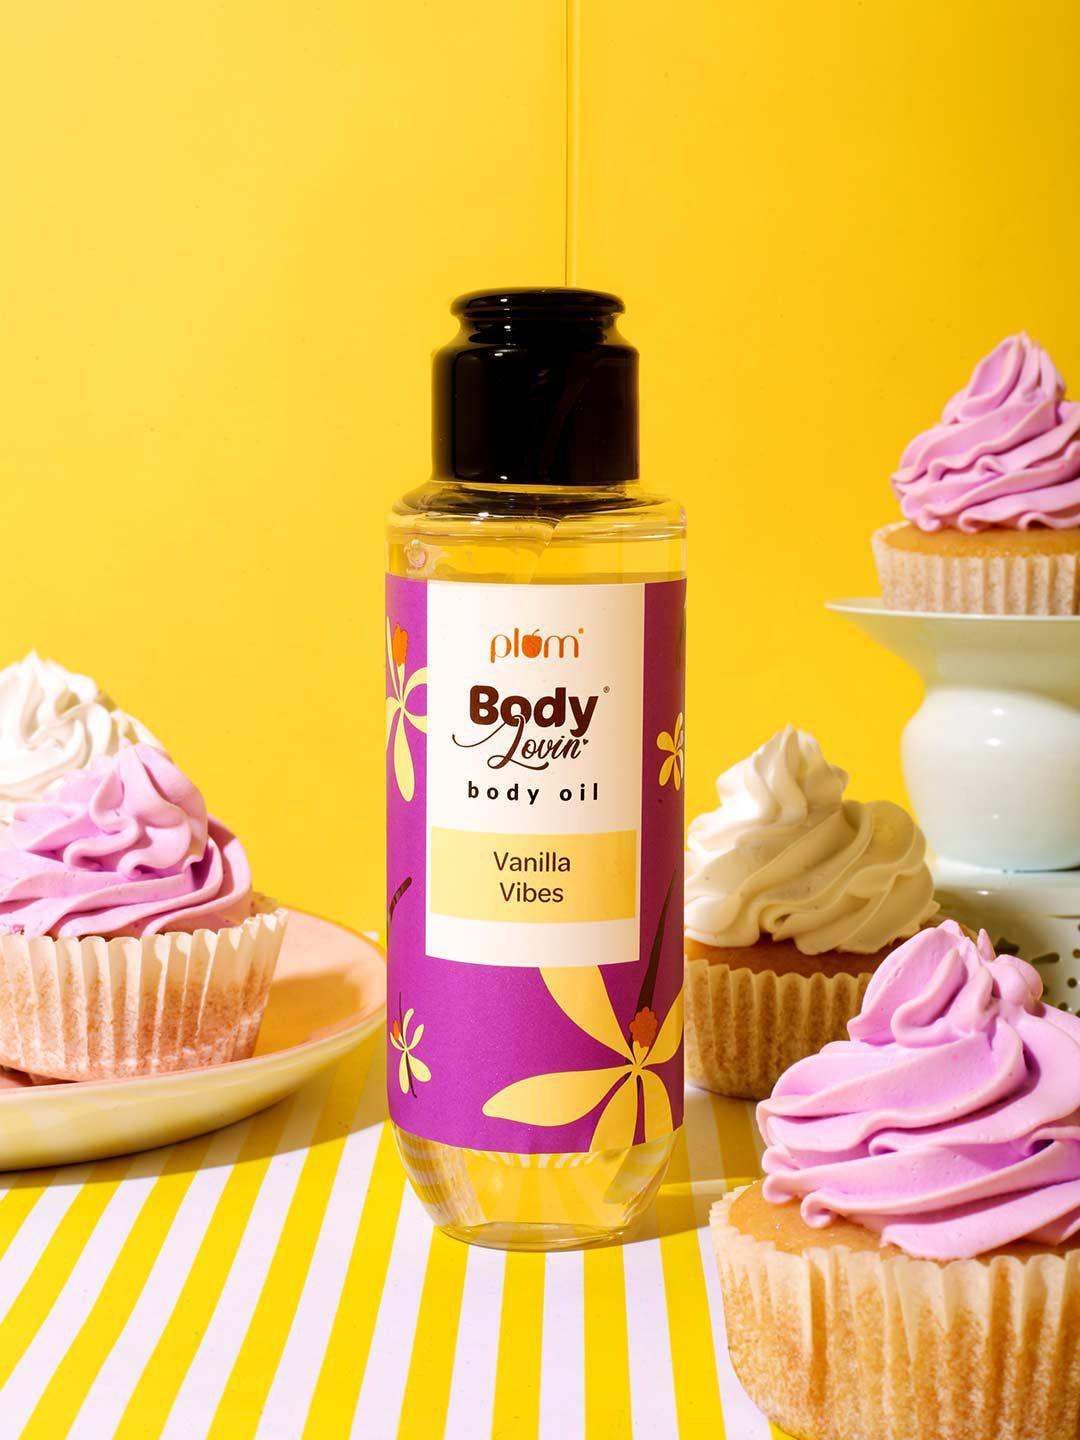 plum-bodylovin'-vanilla-vibes-body-oil-100ml